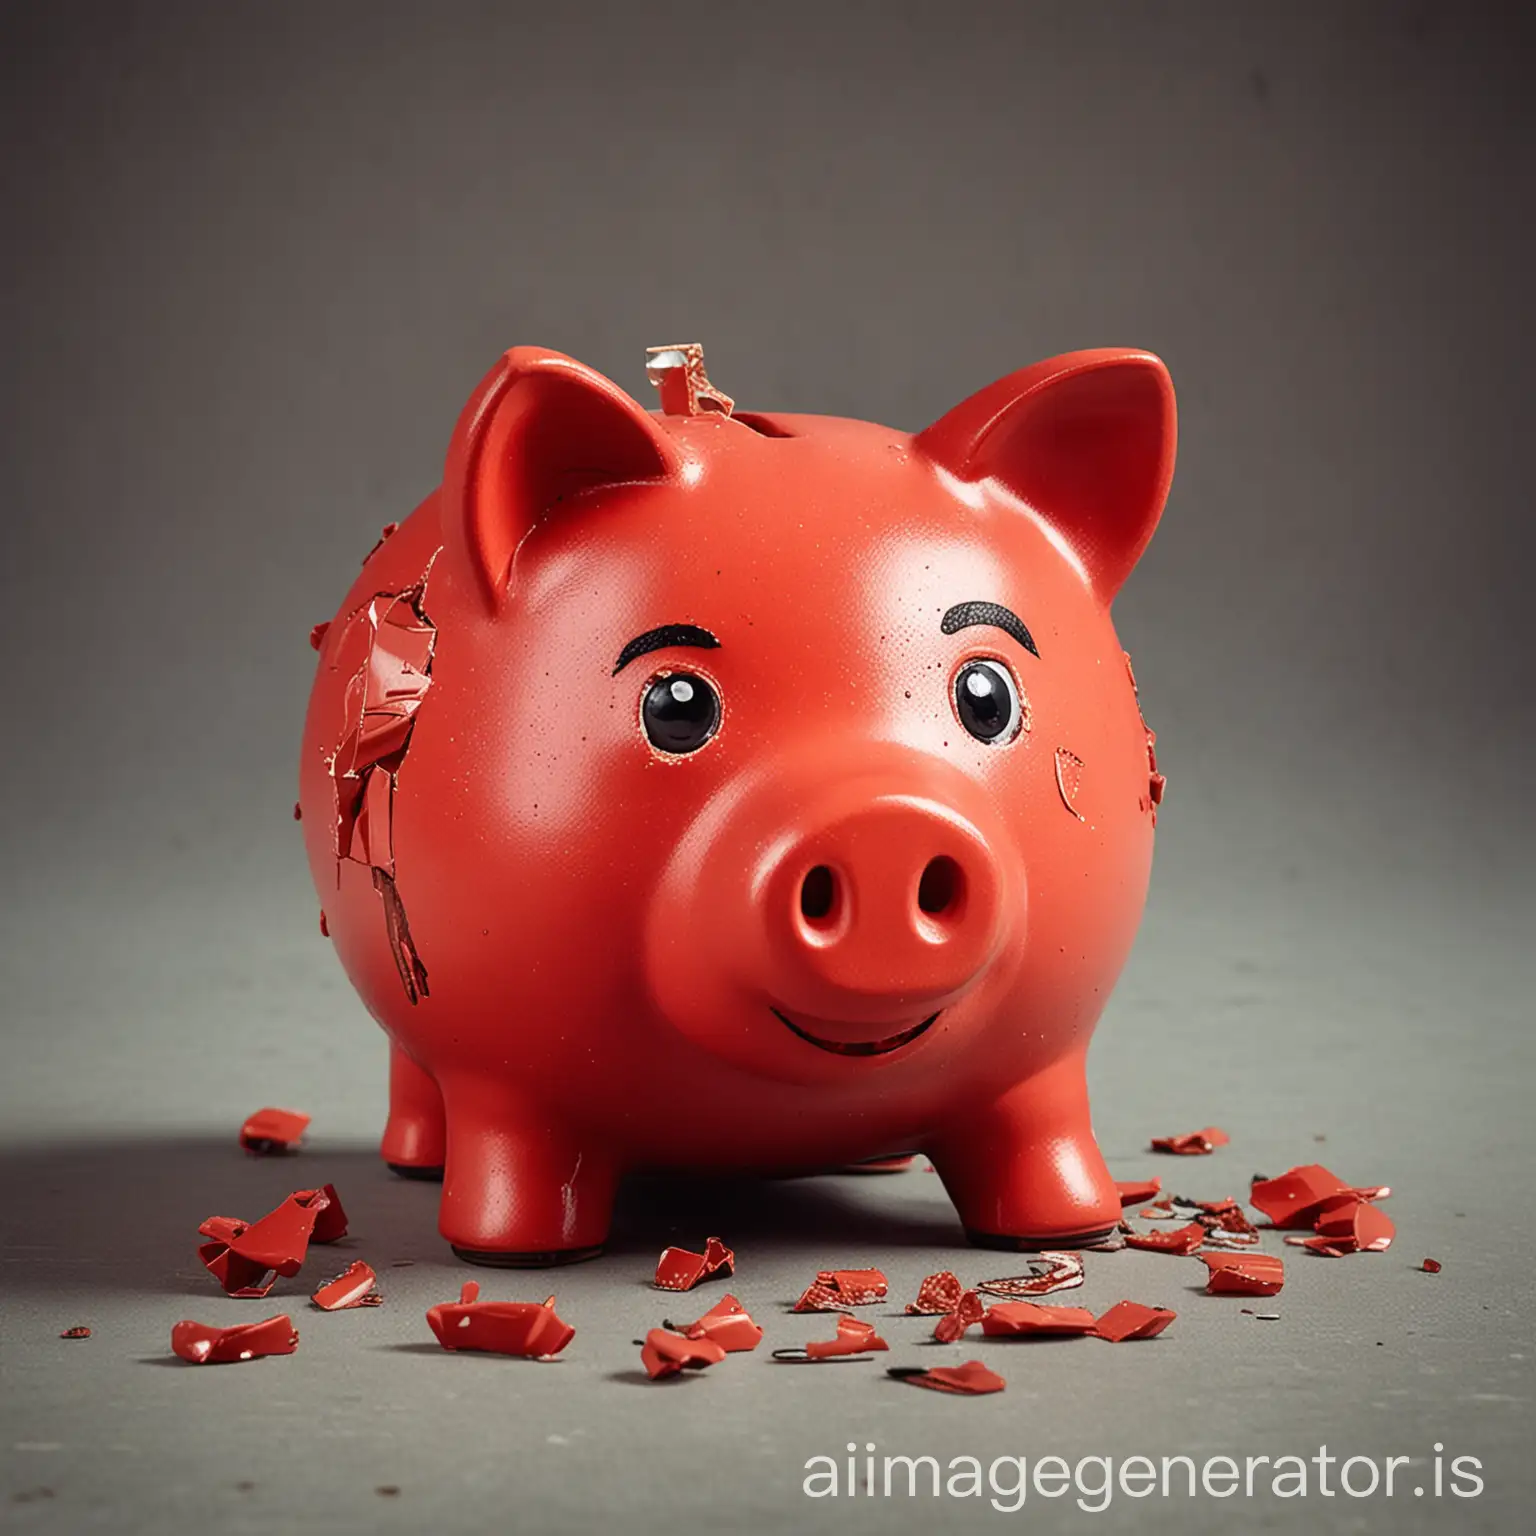 broken red piggy bank